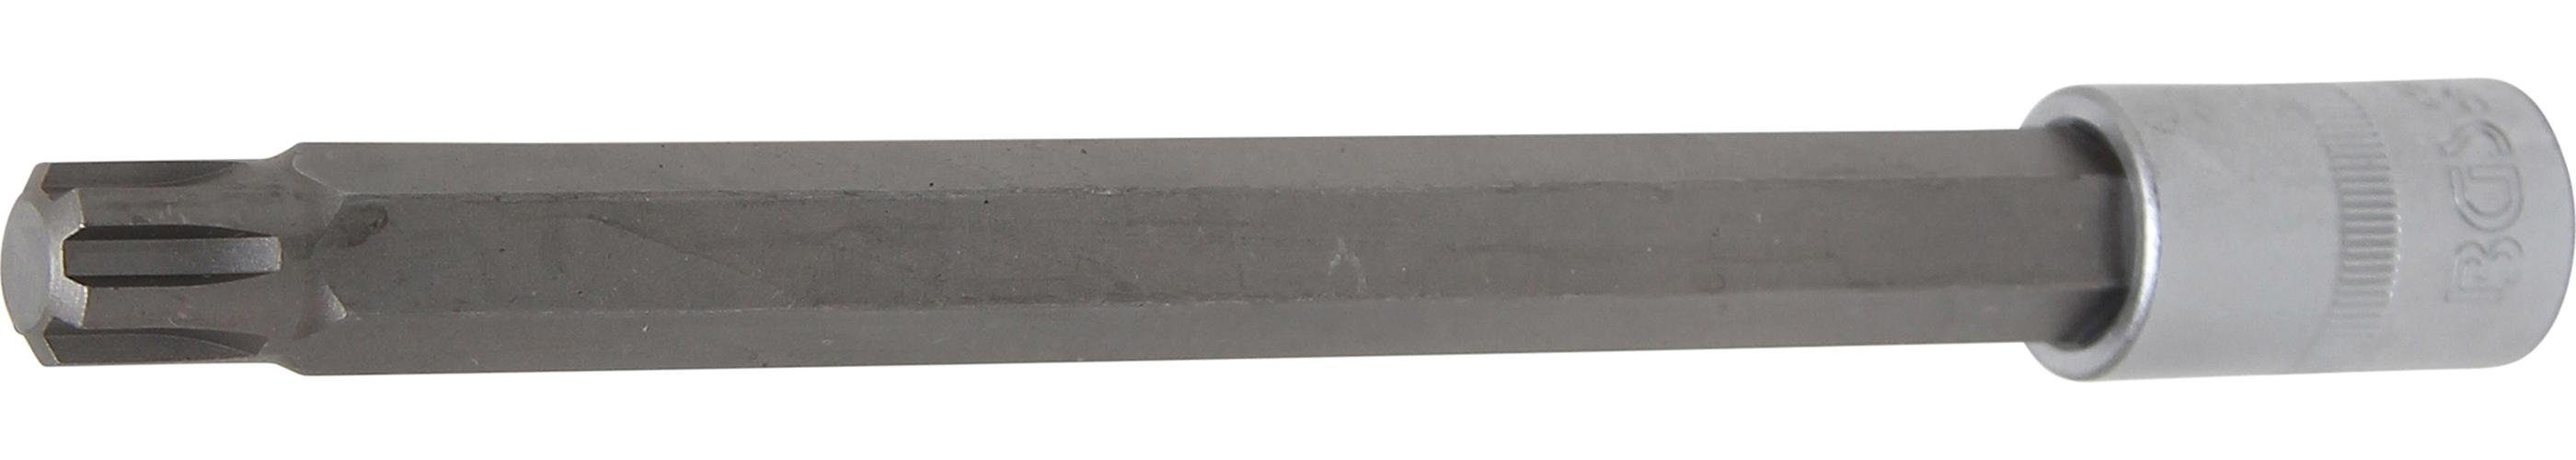 BGS technic Bit-Schraubendreher Bit-Einsatz, Länge 200 mm, Antrieb Innenvierkant 12,5 mm (1/2), Keil-Profil (für RIBE) M14